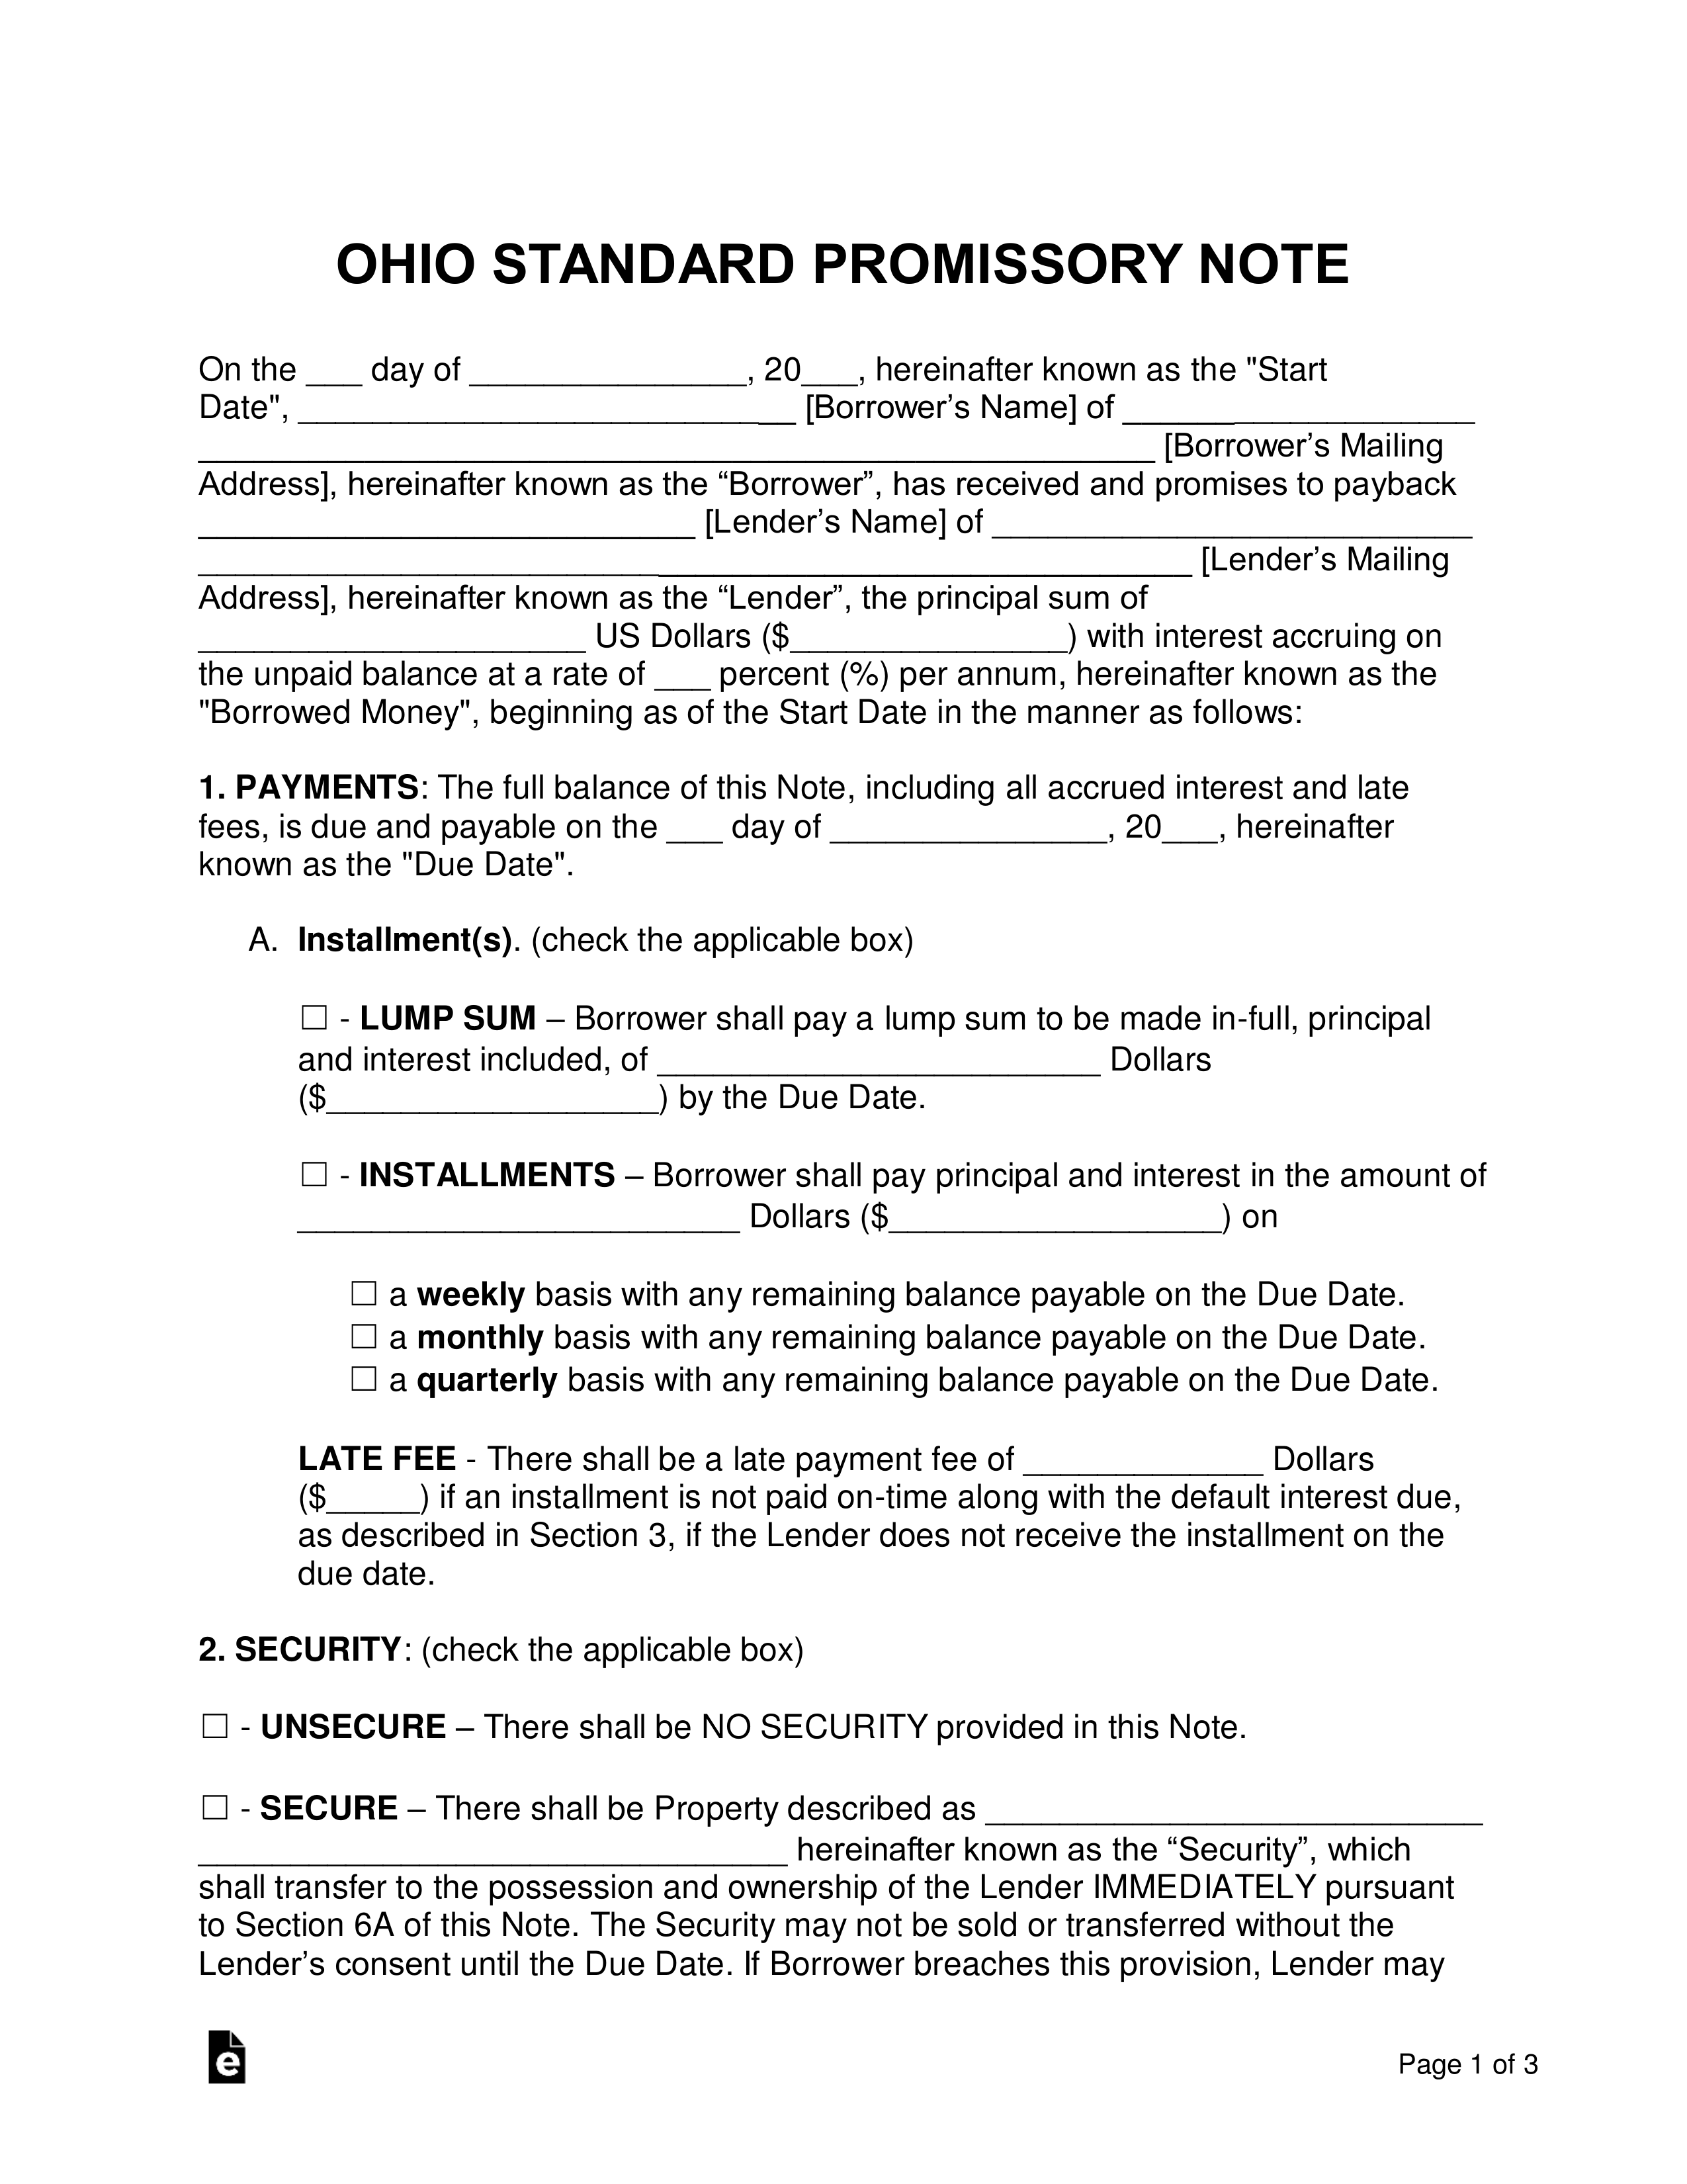 Ohio Promissory Note Templates (2)